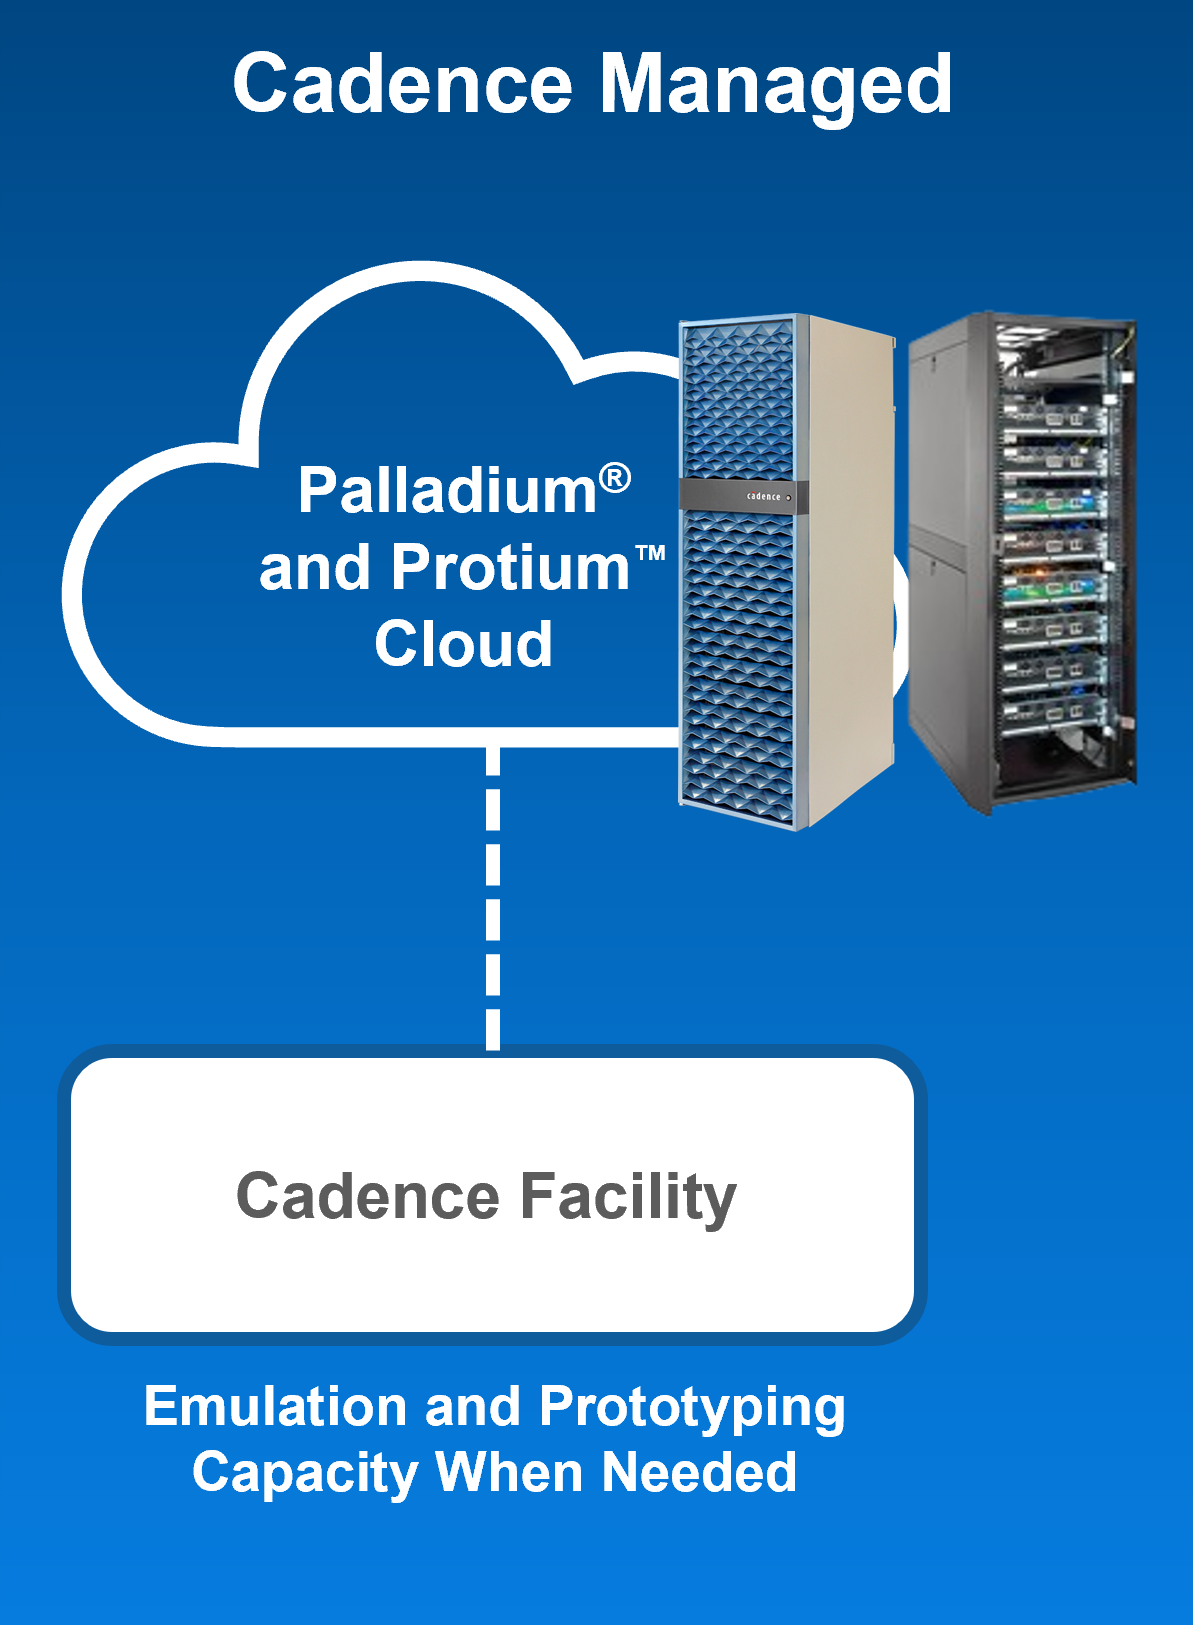 Palladium and Protium Cloud - Cadence Managed diagram